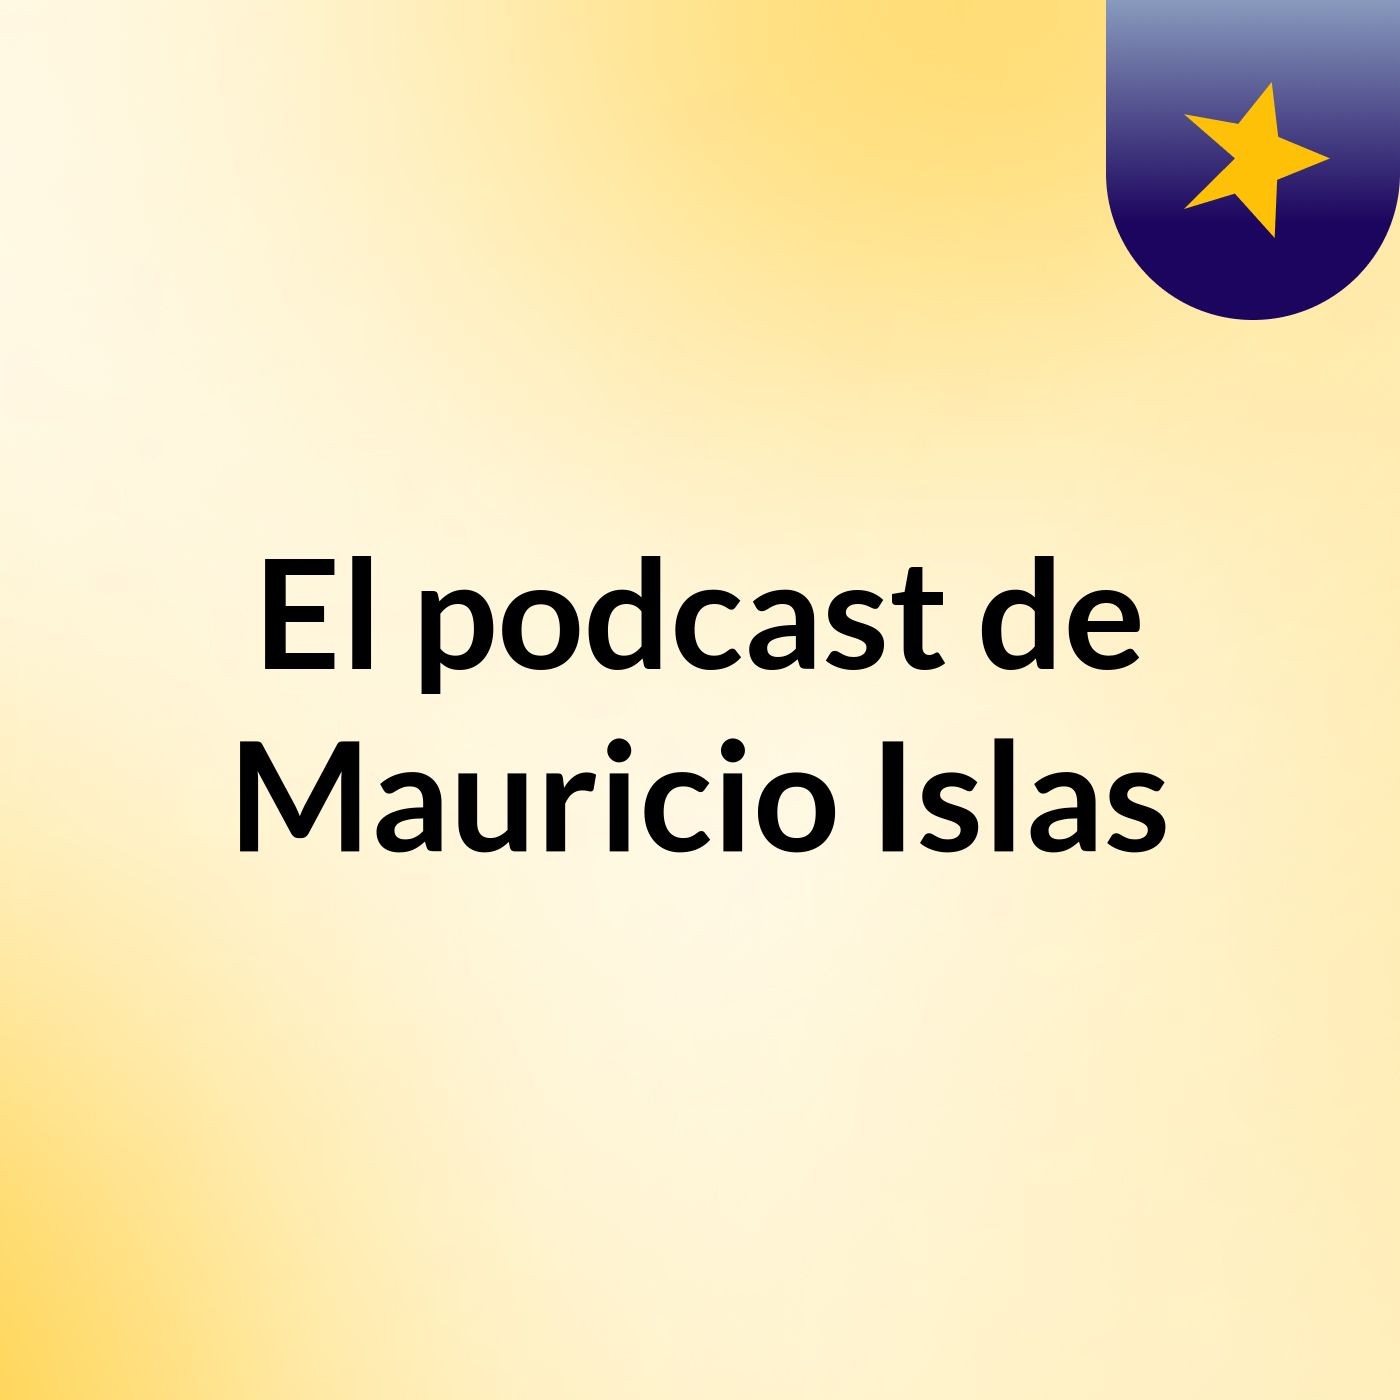 El podcast de Mauricio Islas